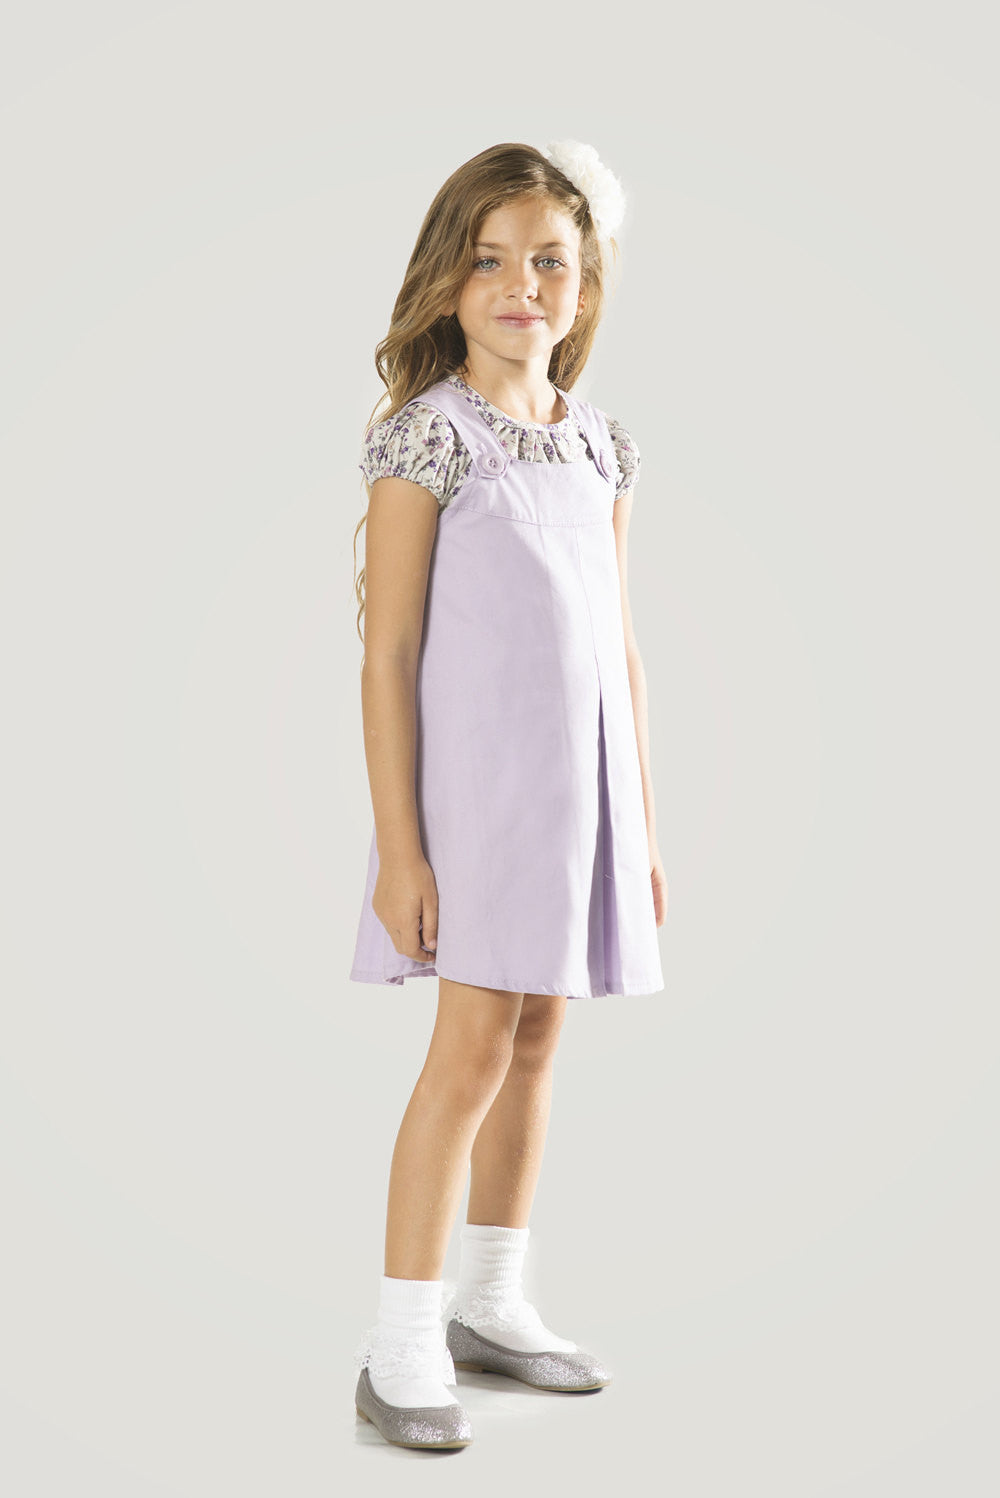 girls purple pinafore dress